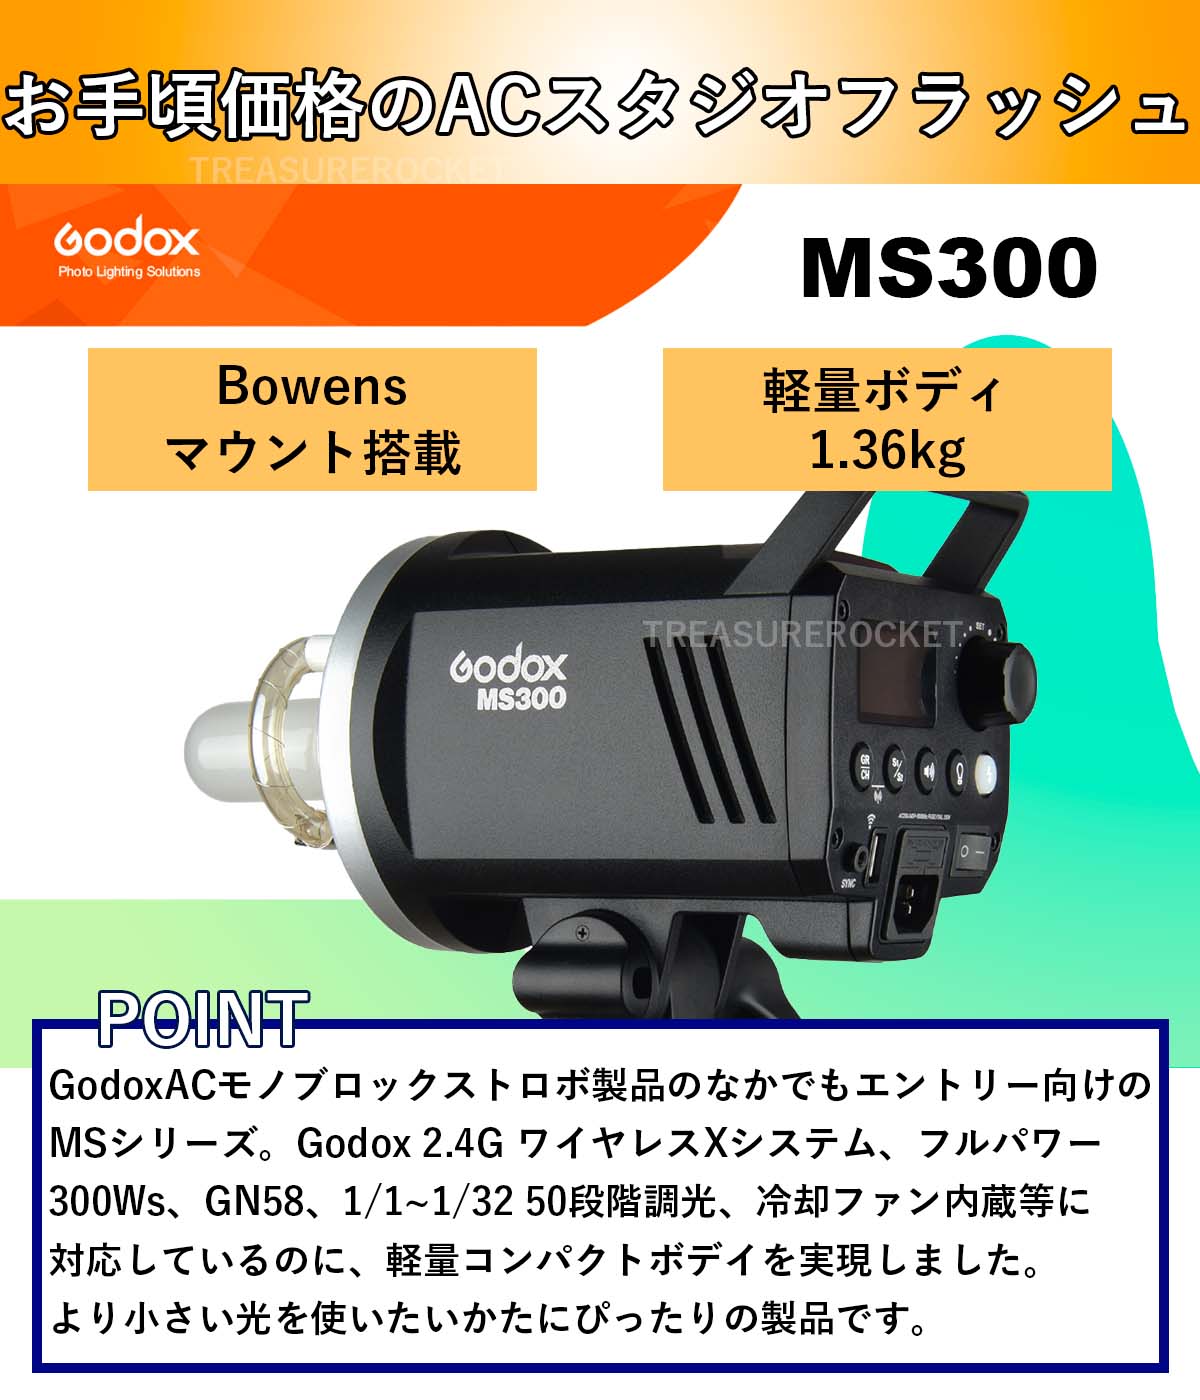 [国内正規代理店] Godox MS300 スタジオフラッシュ 300Ws GN58 110V 2.4G Bowensマウント 5600±200K  150Wモデリングランプ 3p to 2p 変換タップ付 [1年保証]